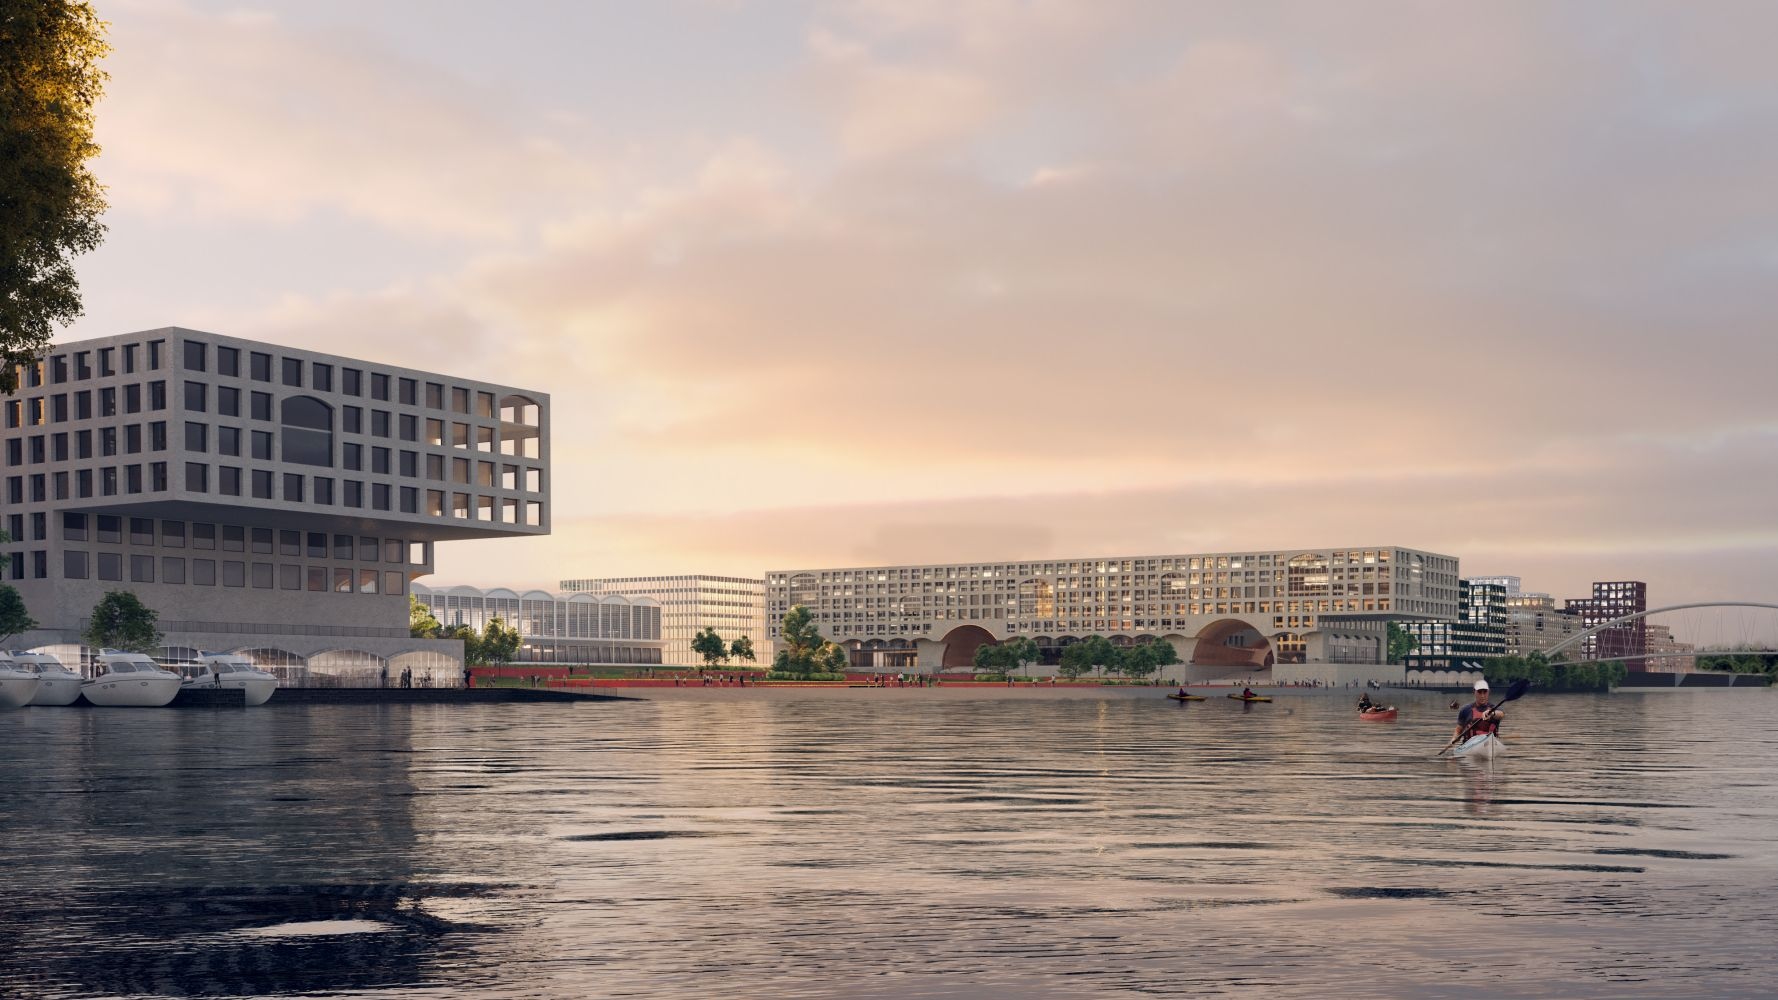 Budapest Déli Városkapu Fejlesztés - a Paradigma Ariadné, a Spacefor, a Lépték-Terv Tájépítész Iroda és Mihálffy Krisztina közös terve